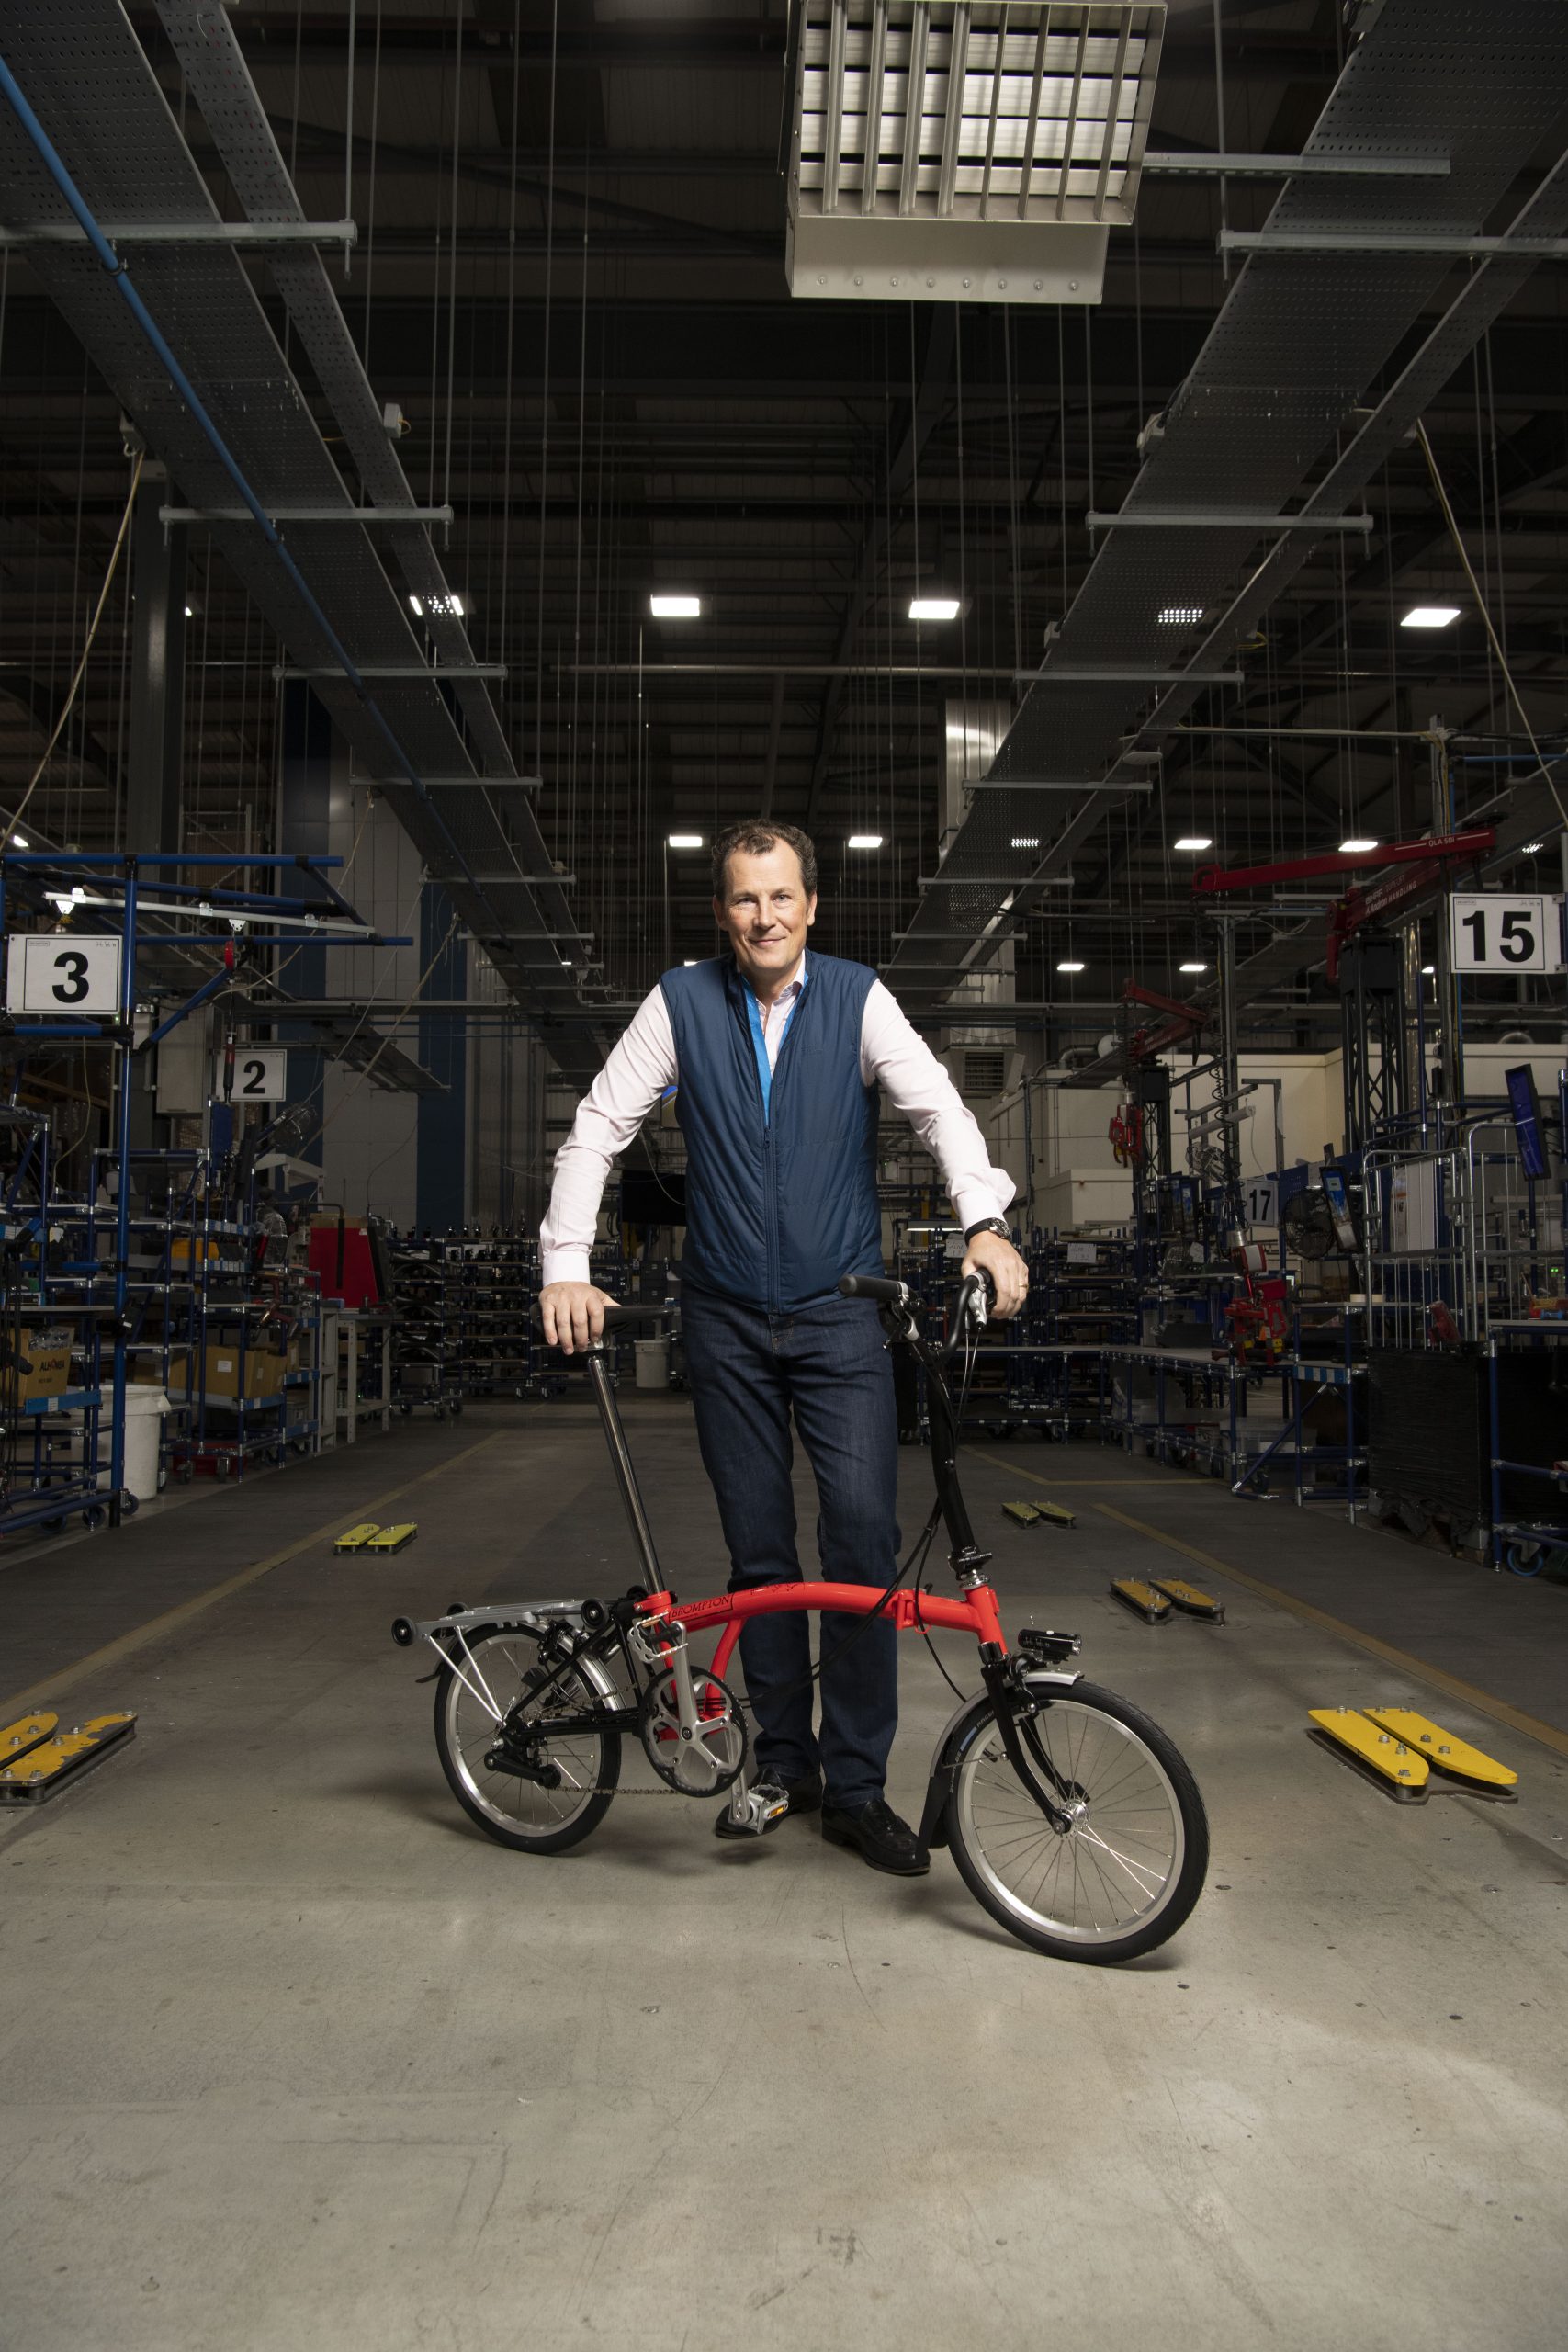 UK’s biggest bike manufacturer backs battery safety bill